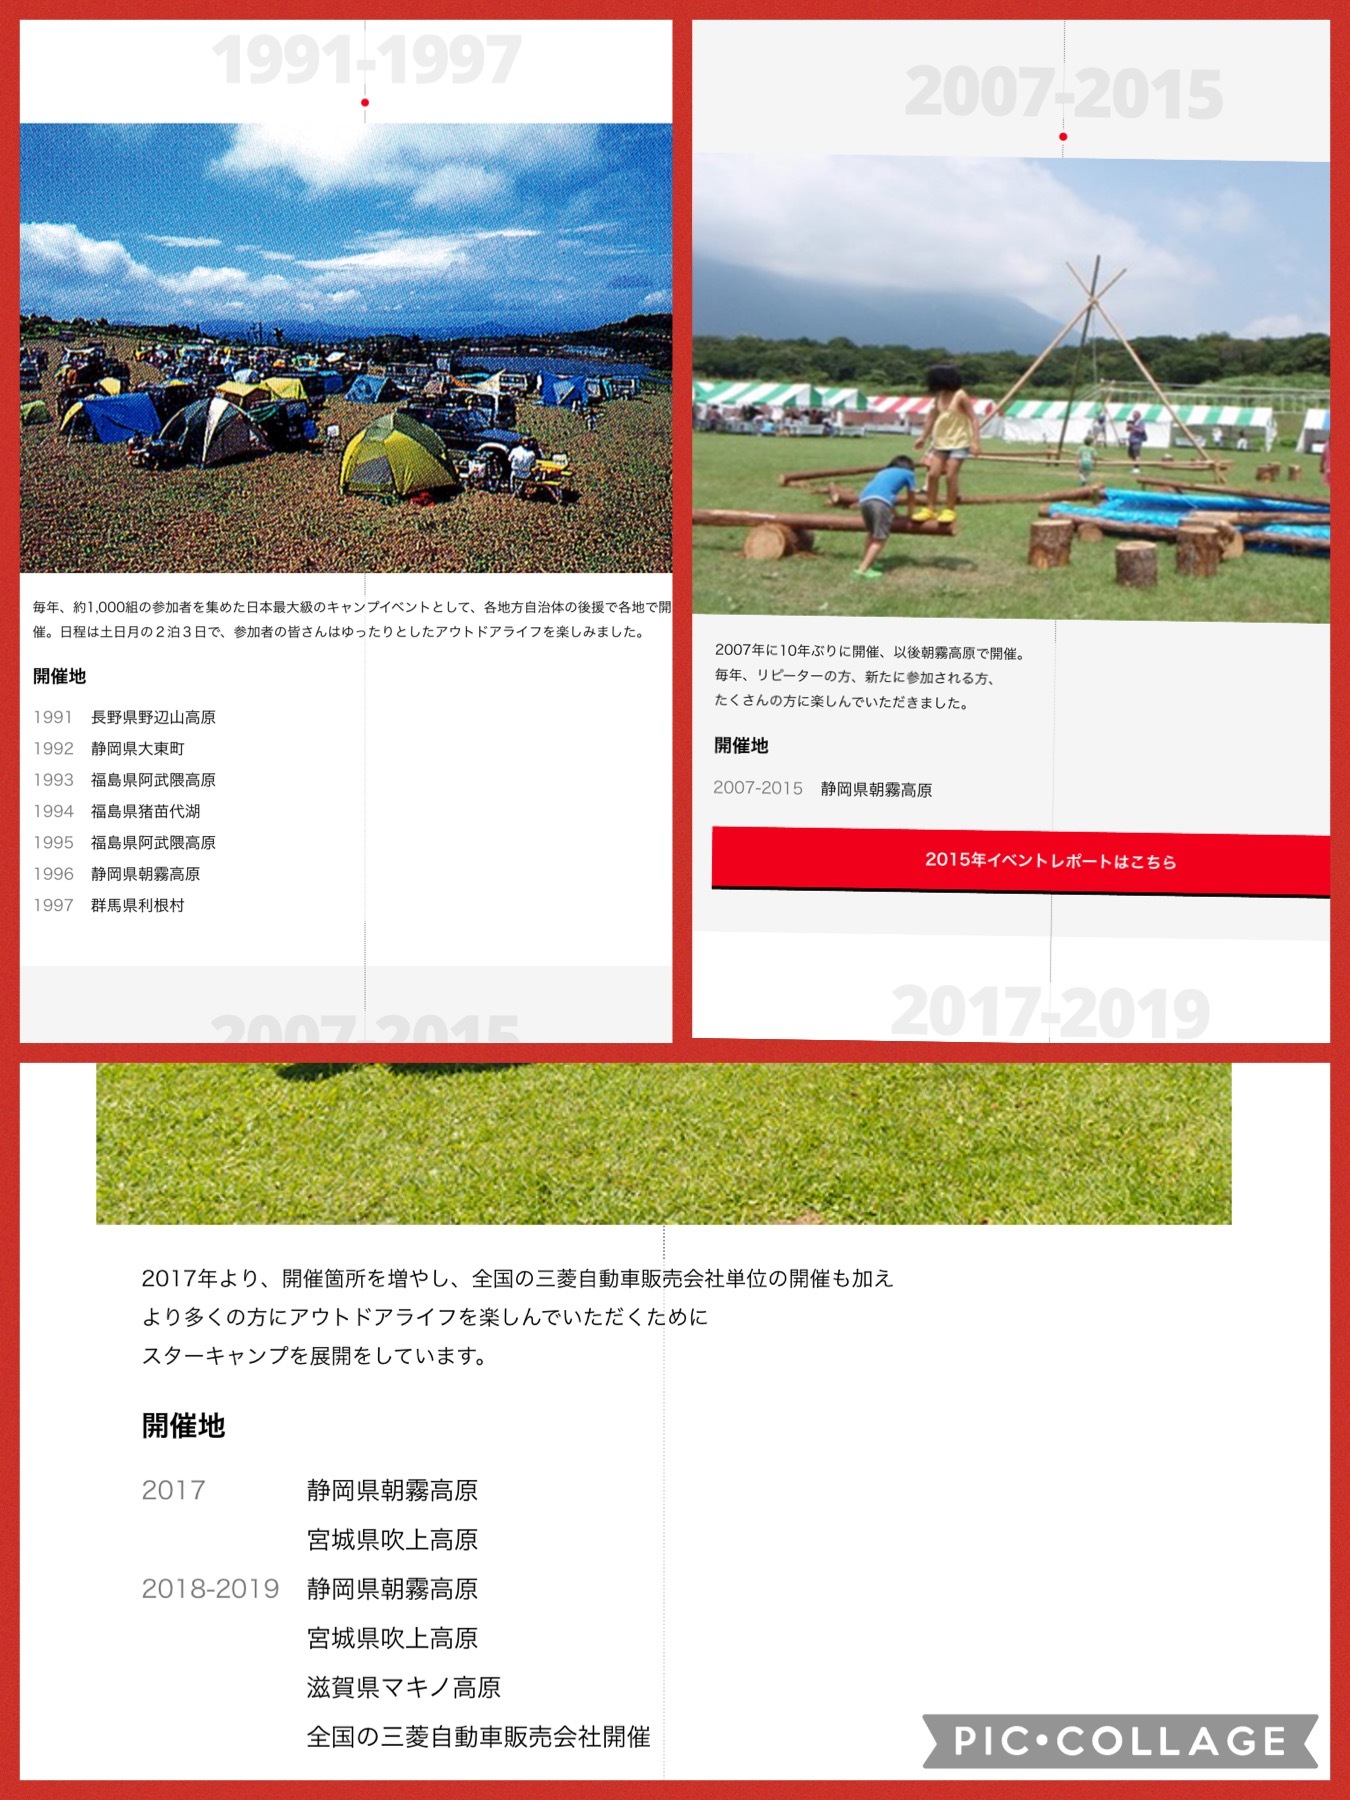 三菱スターキャンプの歴史